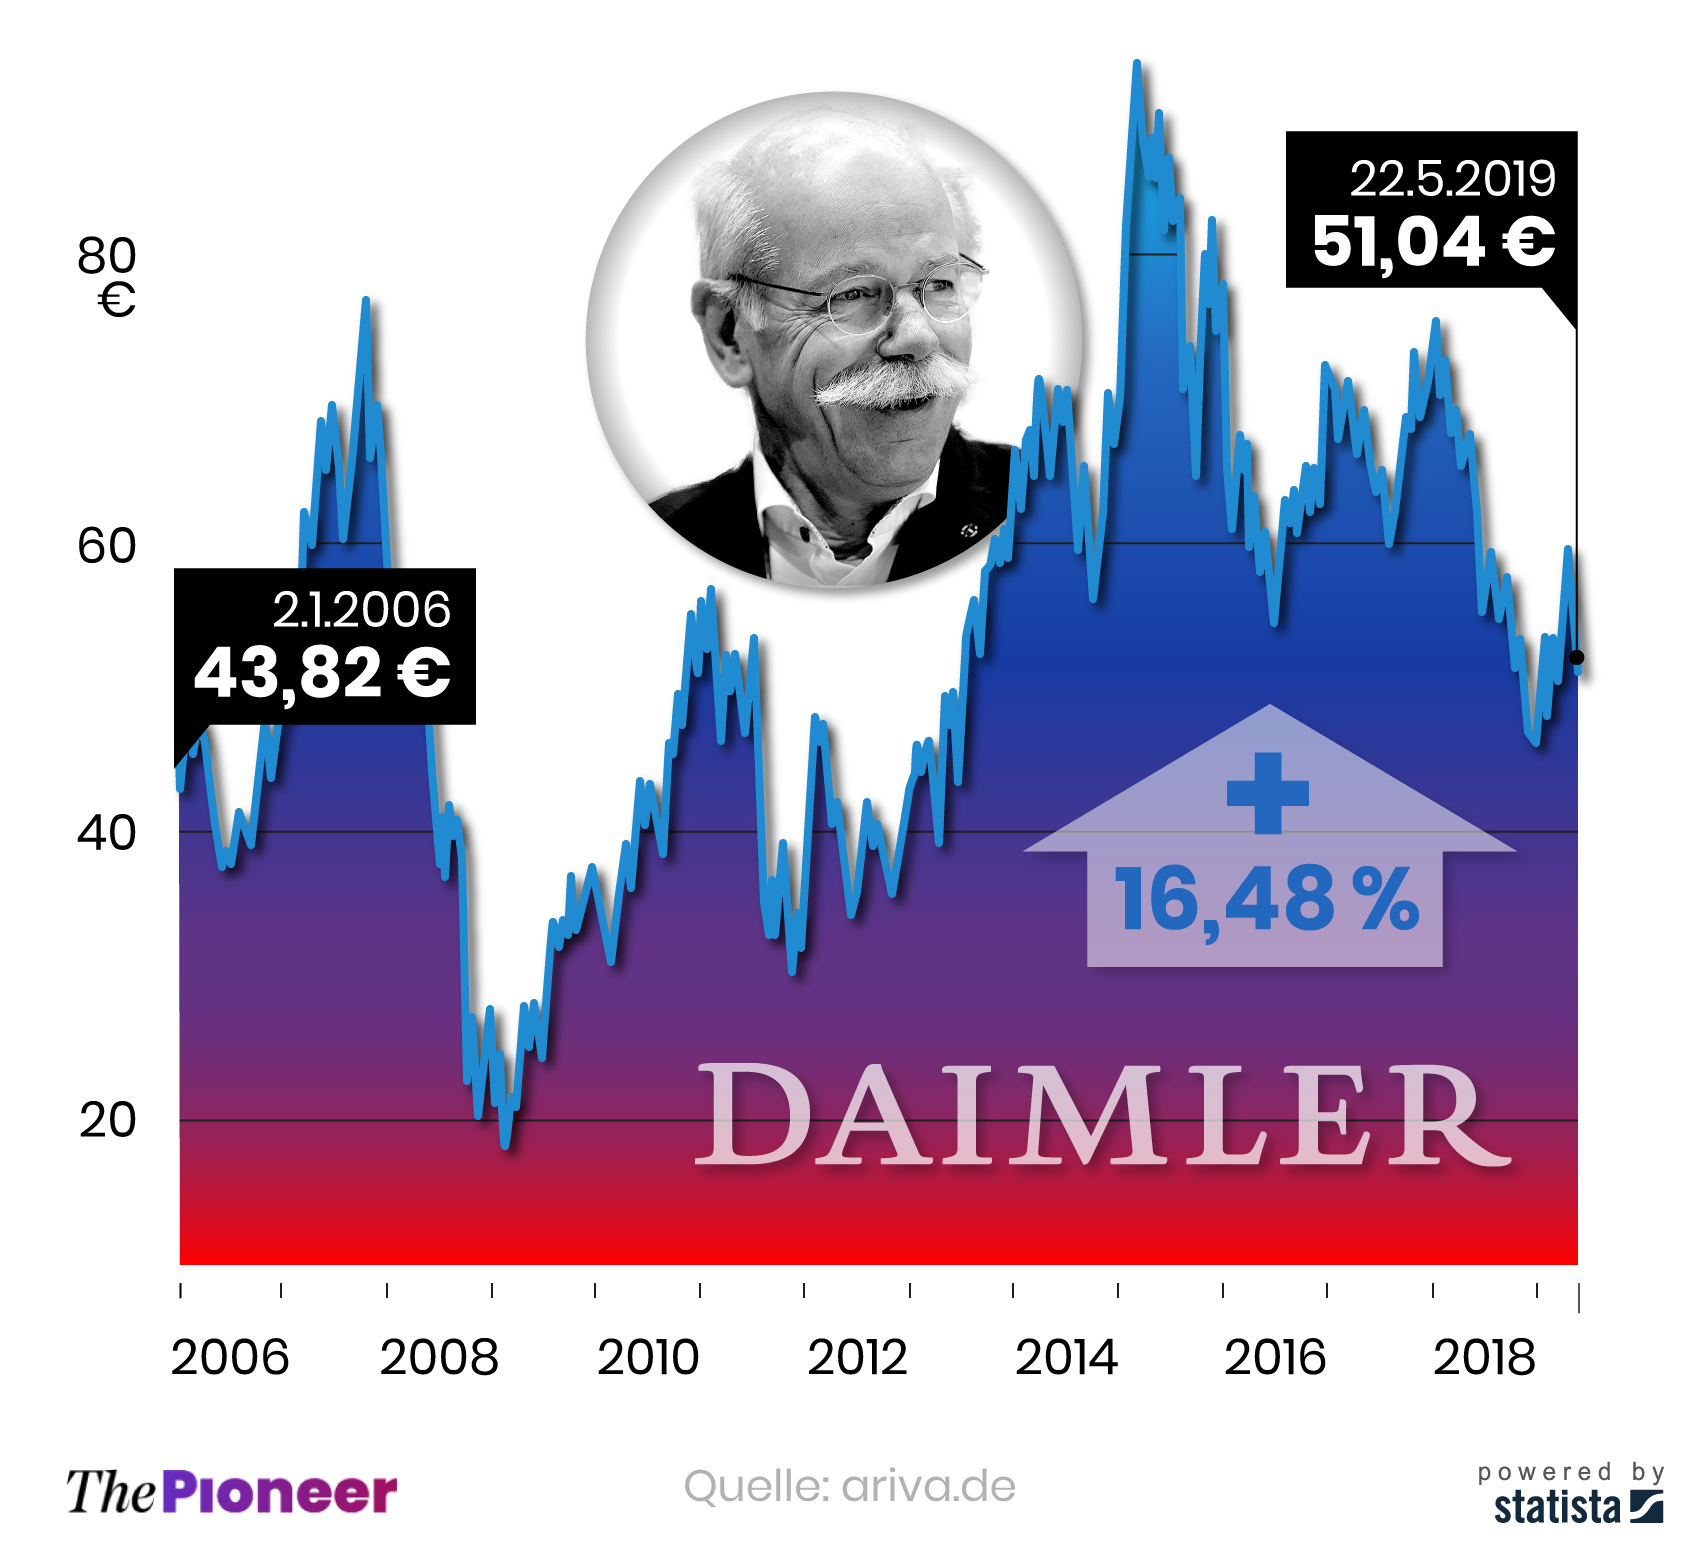 Aktienkurs der Daimler AG unter CEO Dieter Zetsche seit 2.1.2006, in Euro